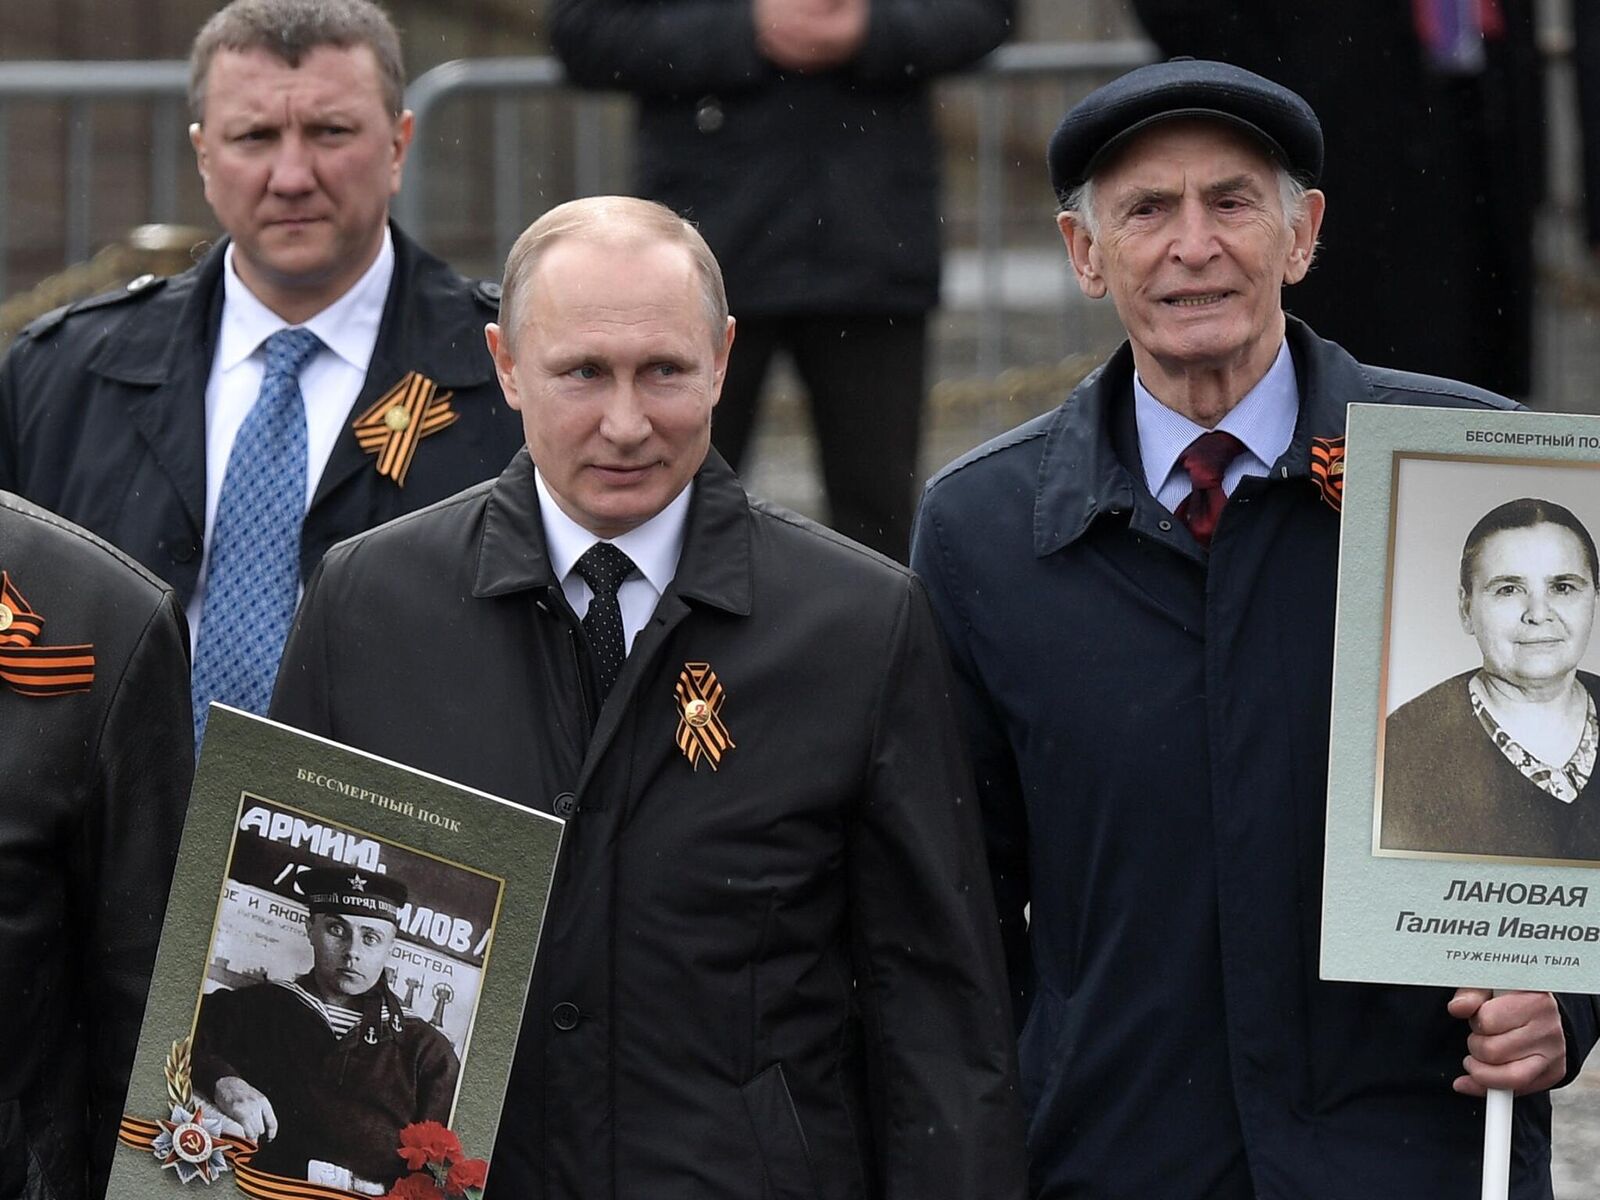 Лановой и Путин Бессмертный полк